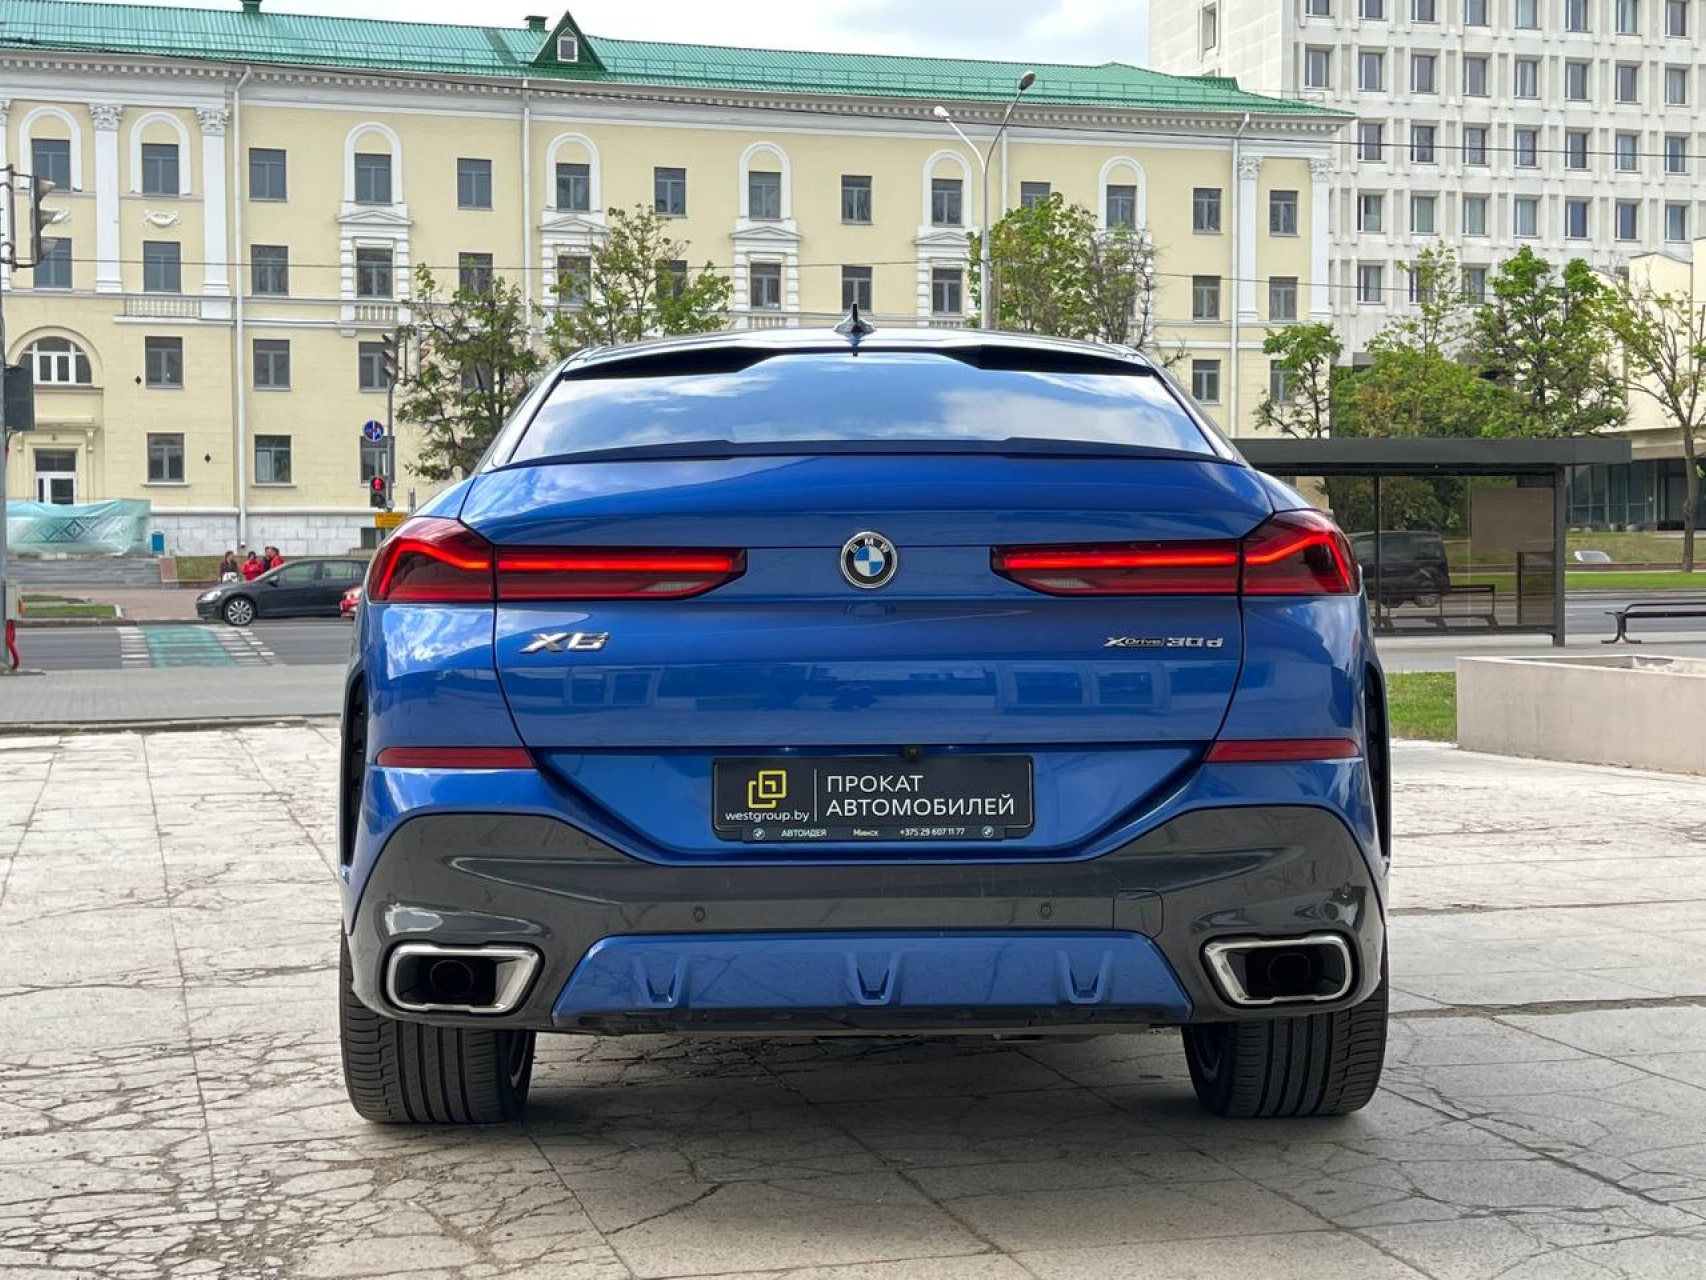 Аренда  BMW X6 G06 M-Sport Pro  6 класса 2020 года в городе Минск от 290 $/сутки,  двигатель: ДТ , объем 3.0 литров, КАСКО (Мультидрайв), без водителя, вид 5 - West Group